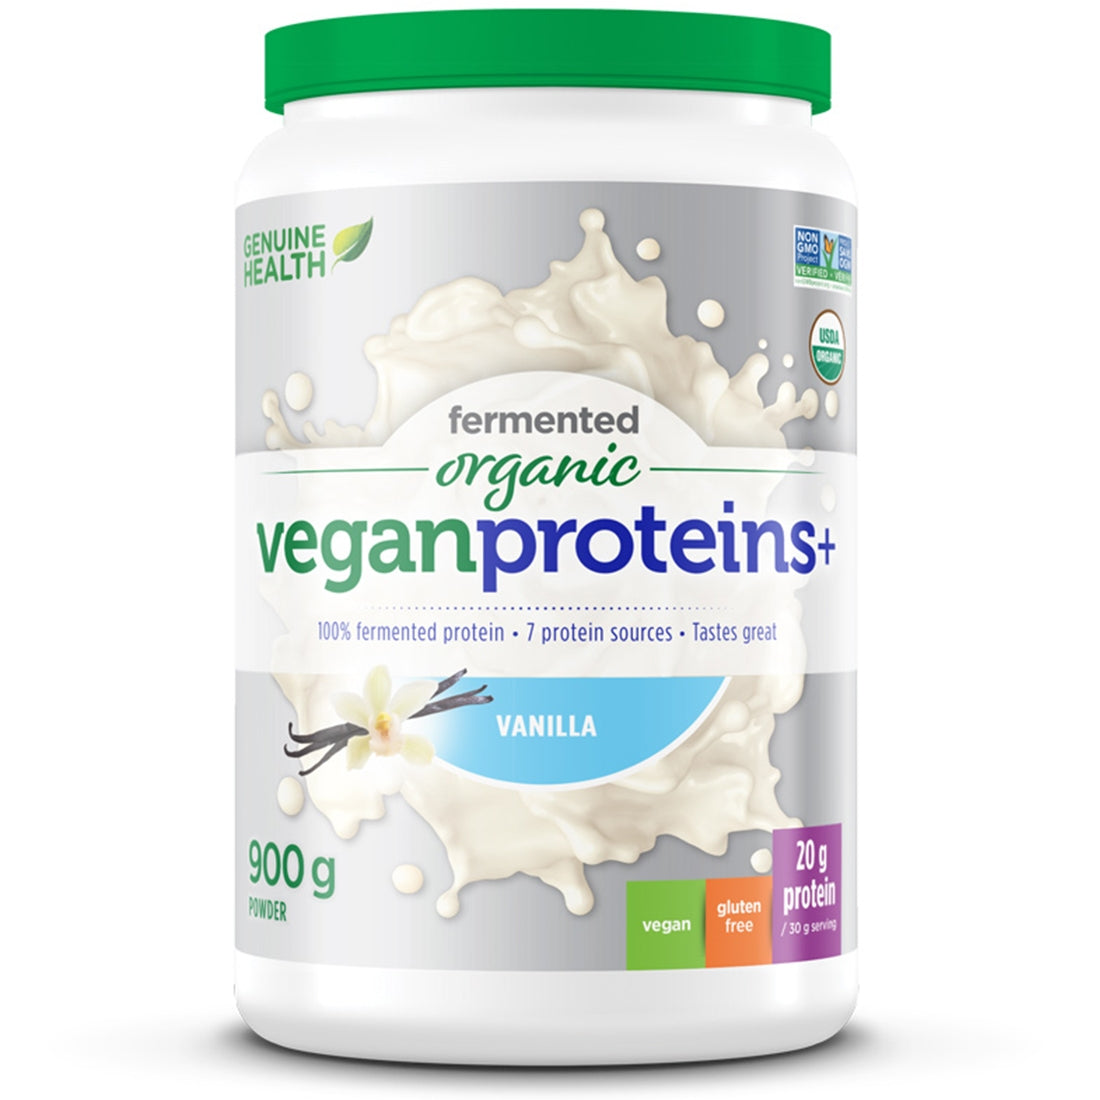 Vanilla 900g | Genuine Health Fermented Organic Vegan Proteins // vanilla flavour